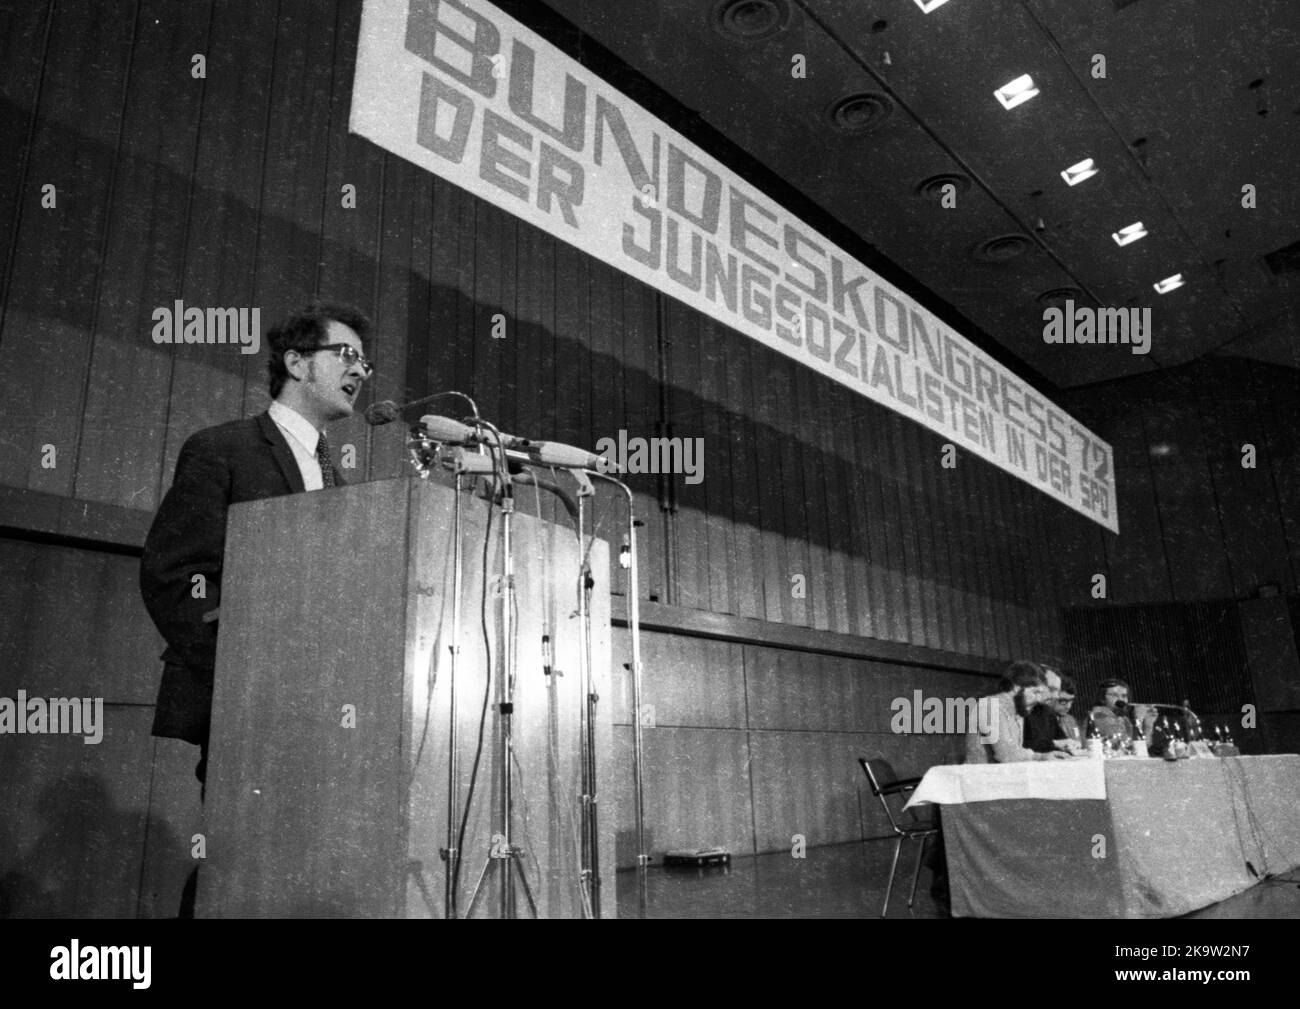 Der Bundeskongress '72 der Jugendsozialisten in der SPD am 26. Februar 1972 in Oberhausen. Karsten Voigt am Rednerpult, Deutschland Stockfoto